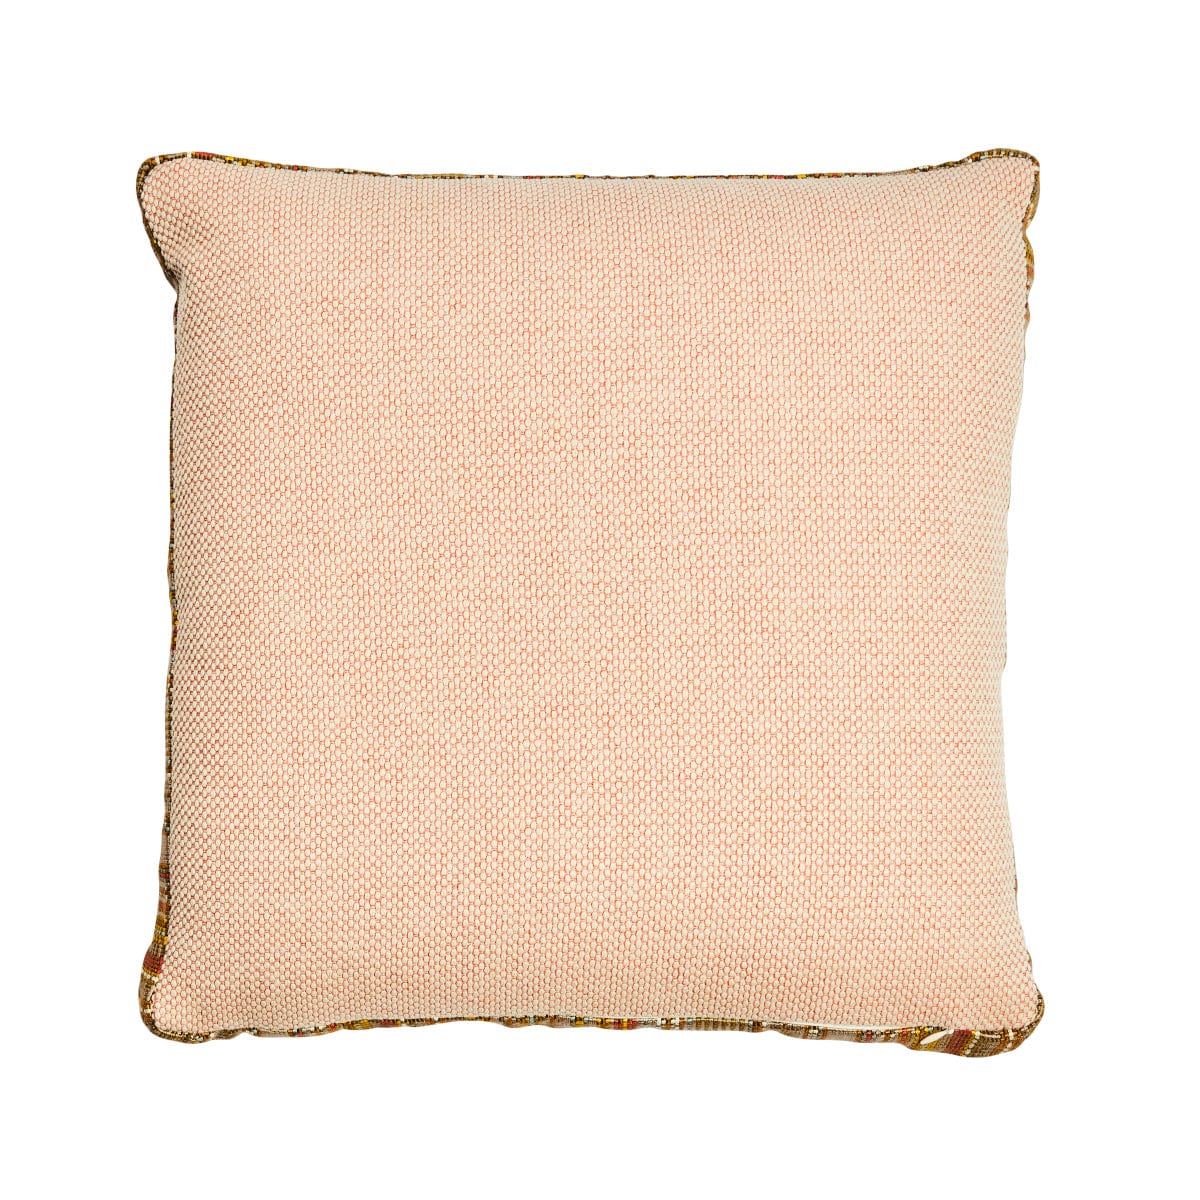 Elizabeth - Hand Made Cushion